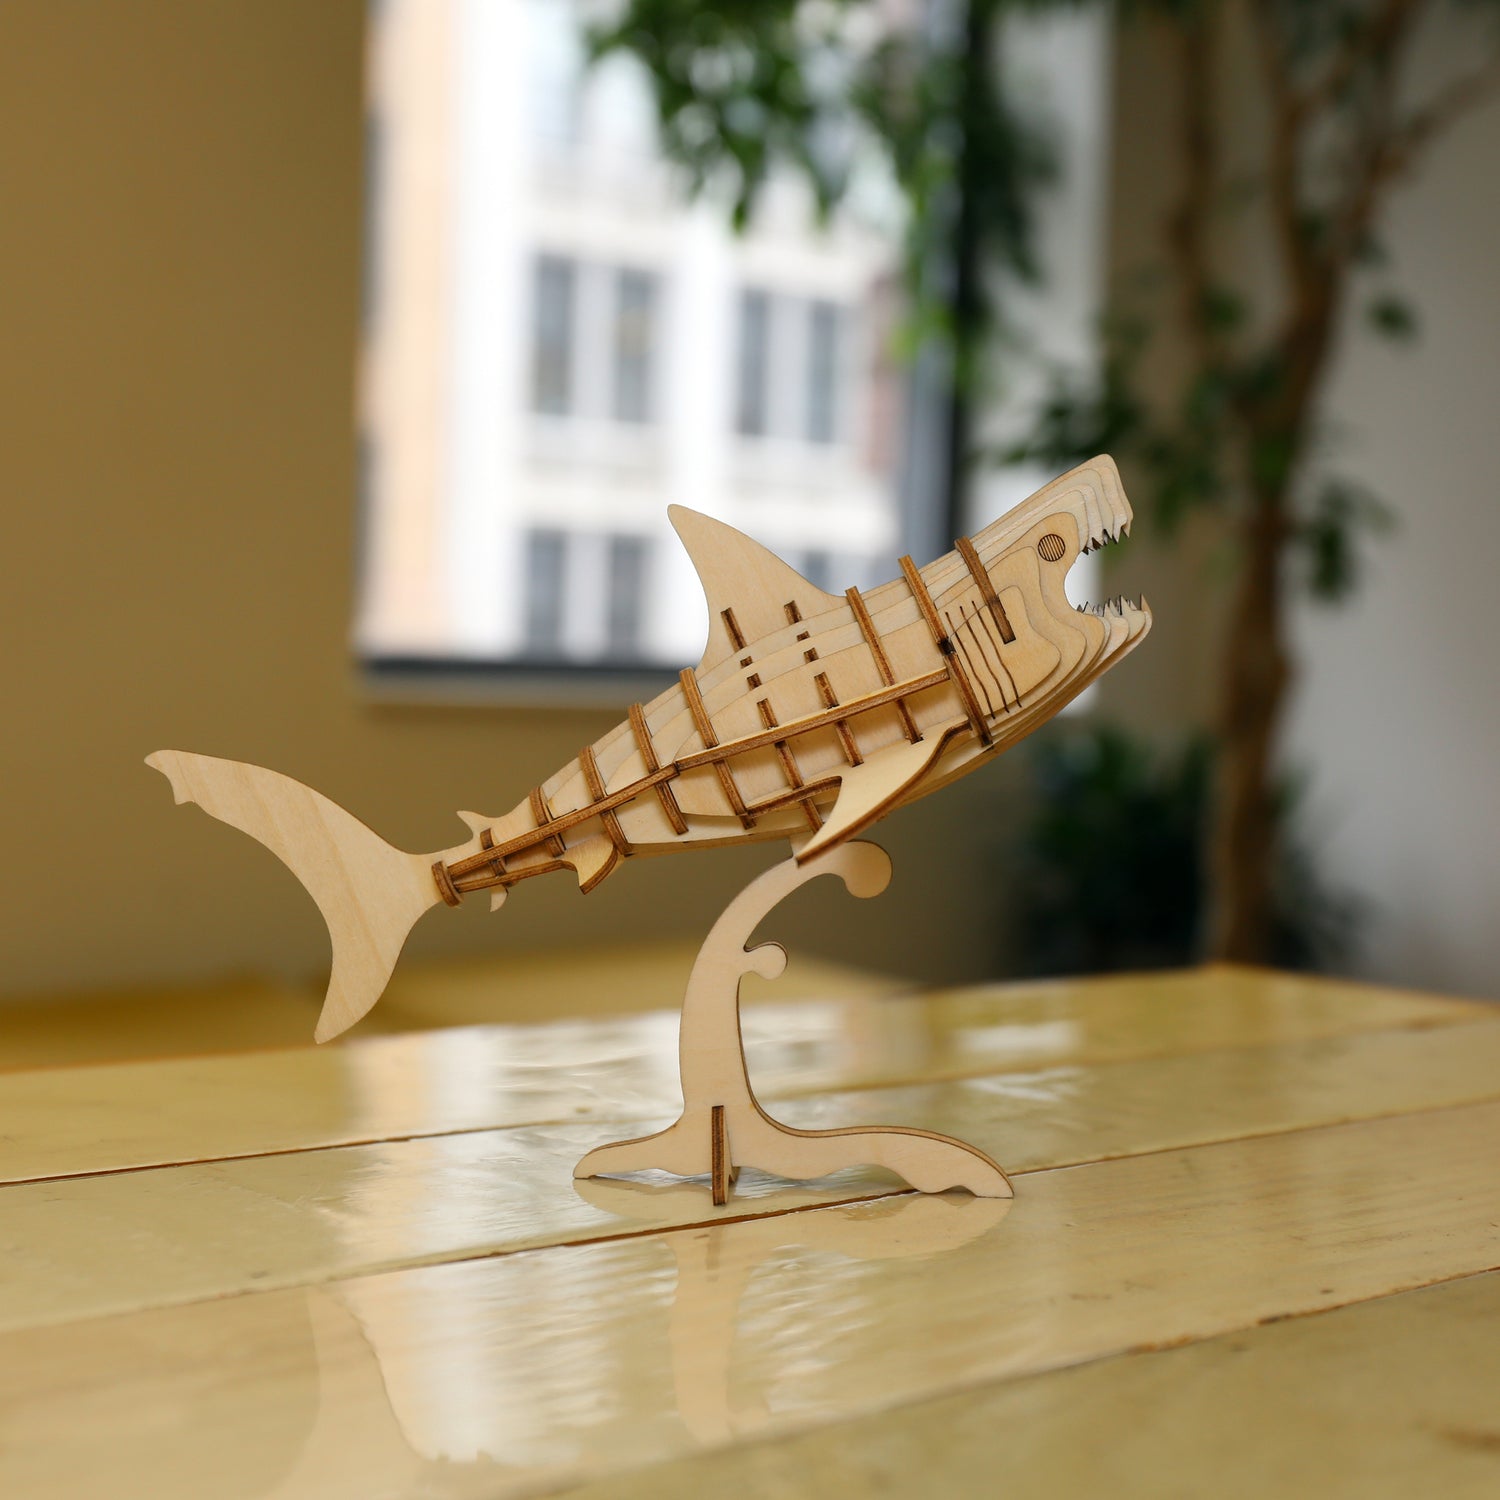 Haai 3D houten puzzel